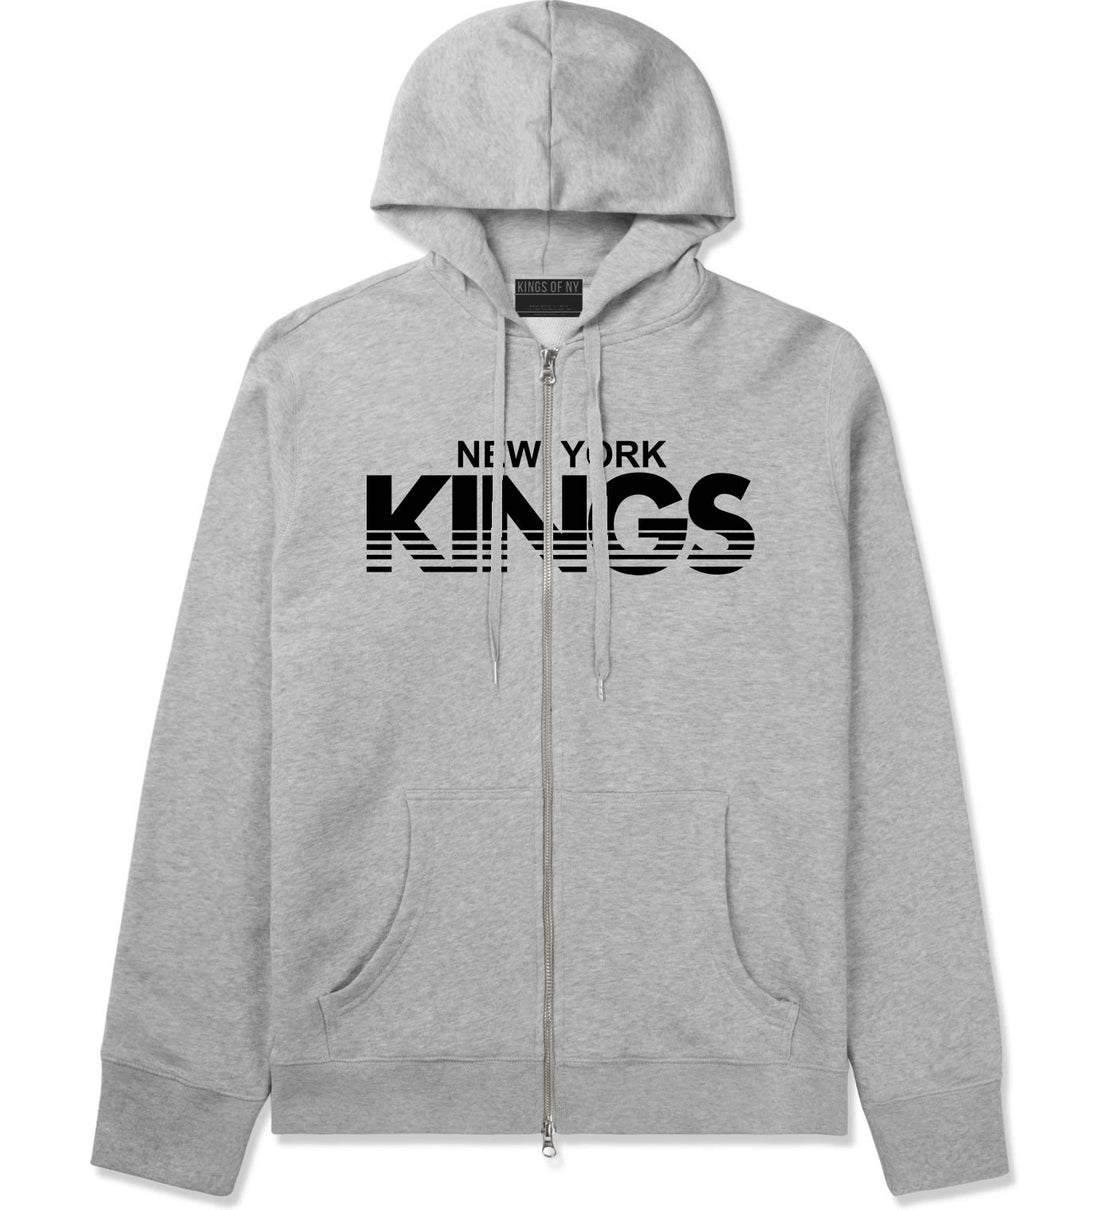 New York Kings Racing Style Zip Up Hoodie Hoody in Grey by Kings Of NY